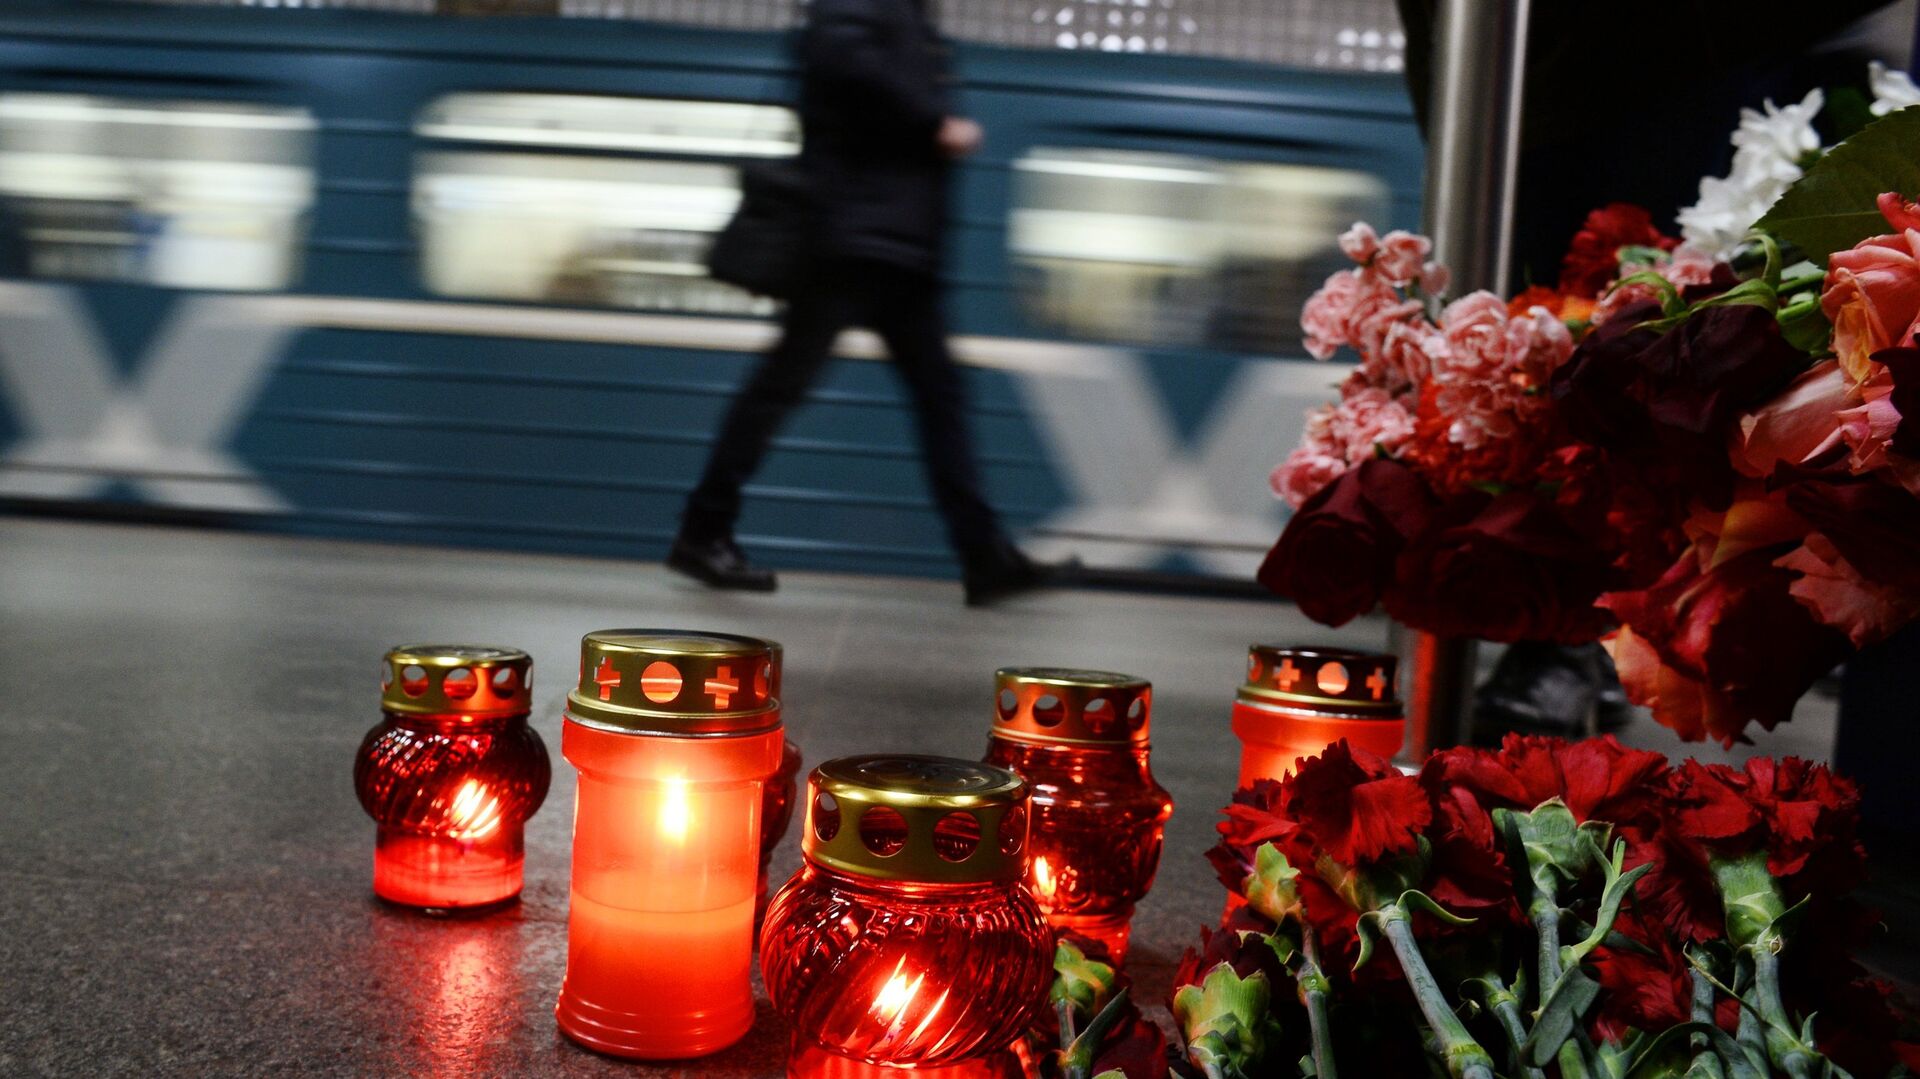 Генпрокуратура утвердила обвинение по делу о теракте в метро в 2010 году